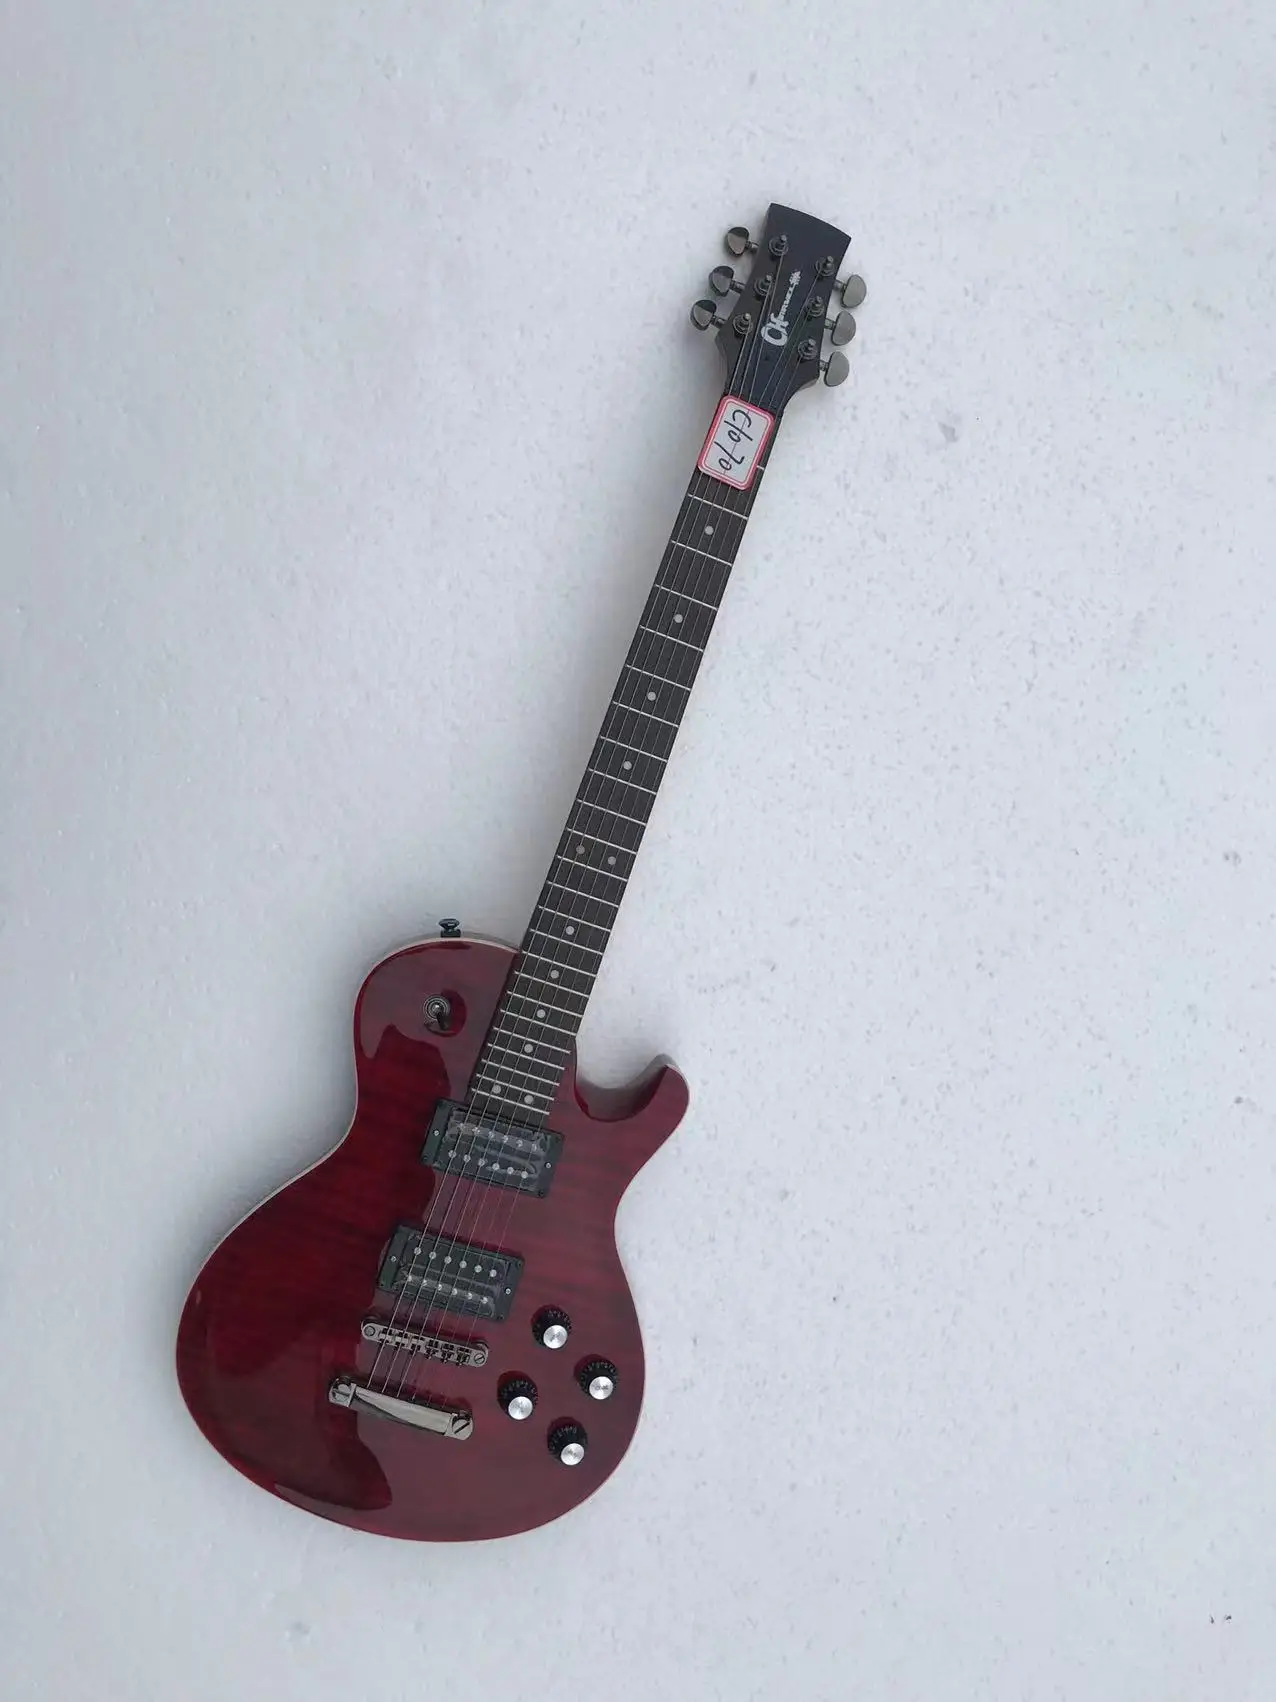 Оригинальная электрическая гитара (не новая) Tiger / Flame Maple Top, оригинальный аксессуар, скидка, бесплатная доставка, C1070